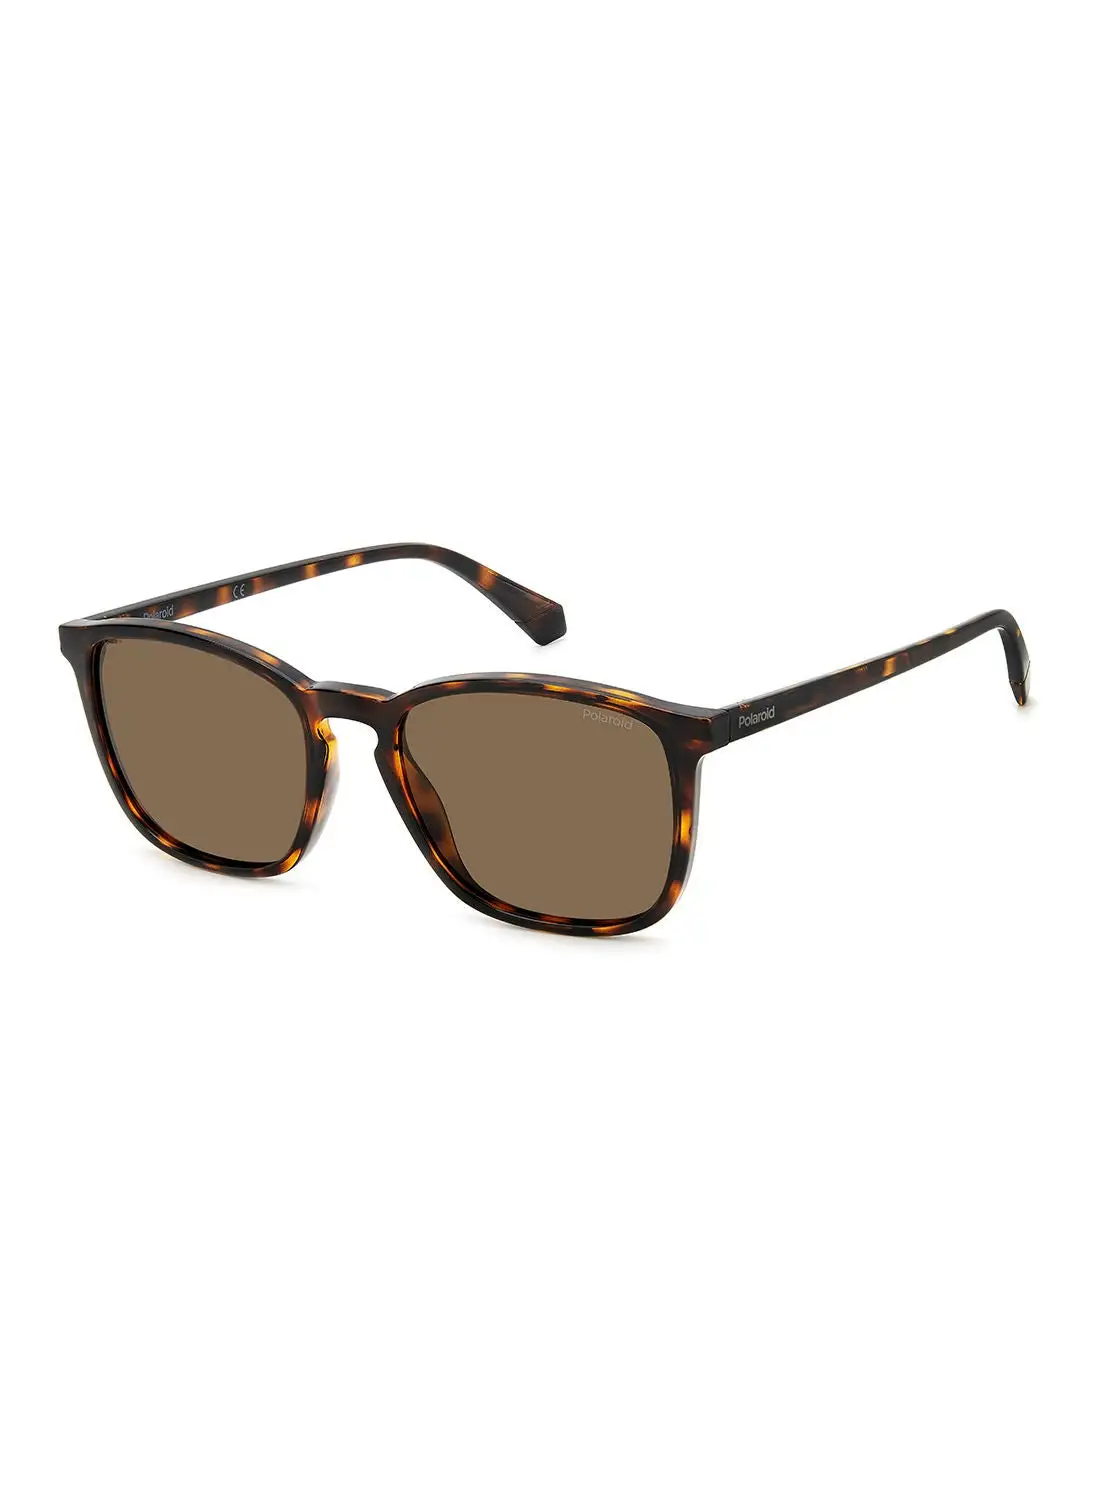 Polaroid Men's UV Protection Square Sunglasses - Pld 4139/S Hvn 54 - Lens Size: 54 Mm